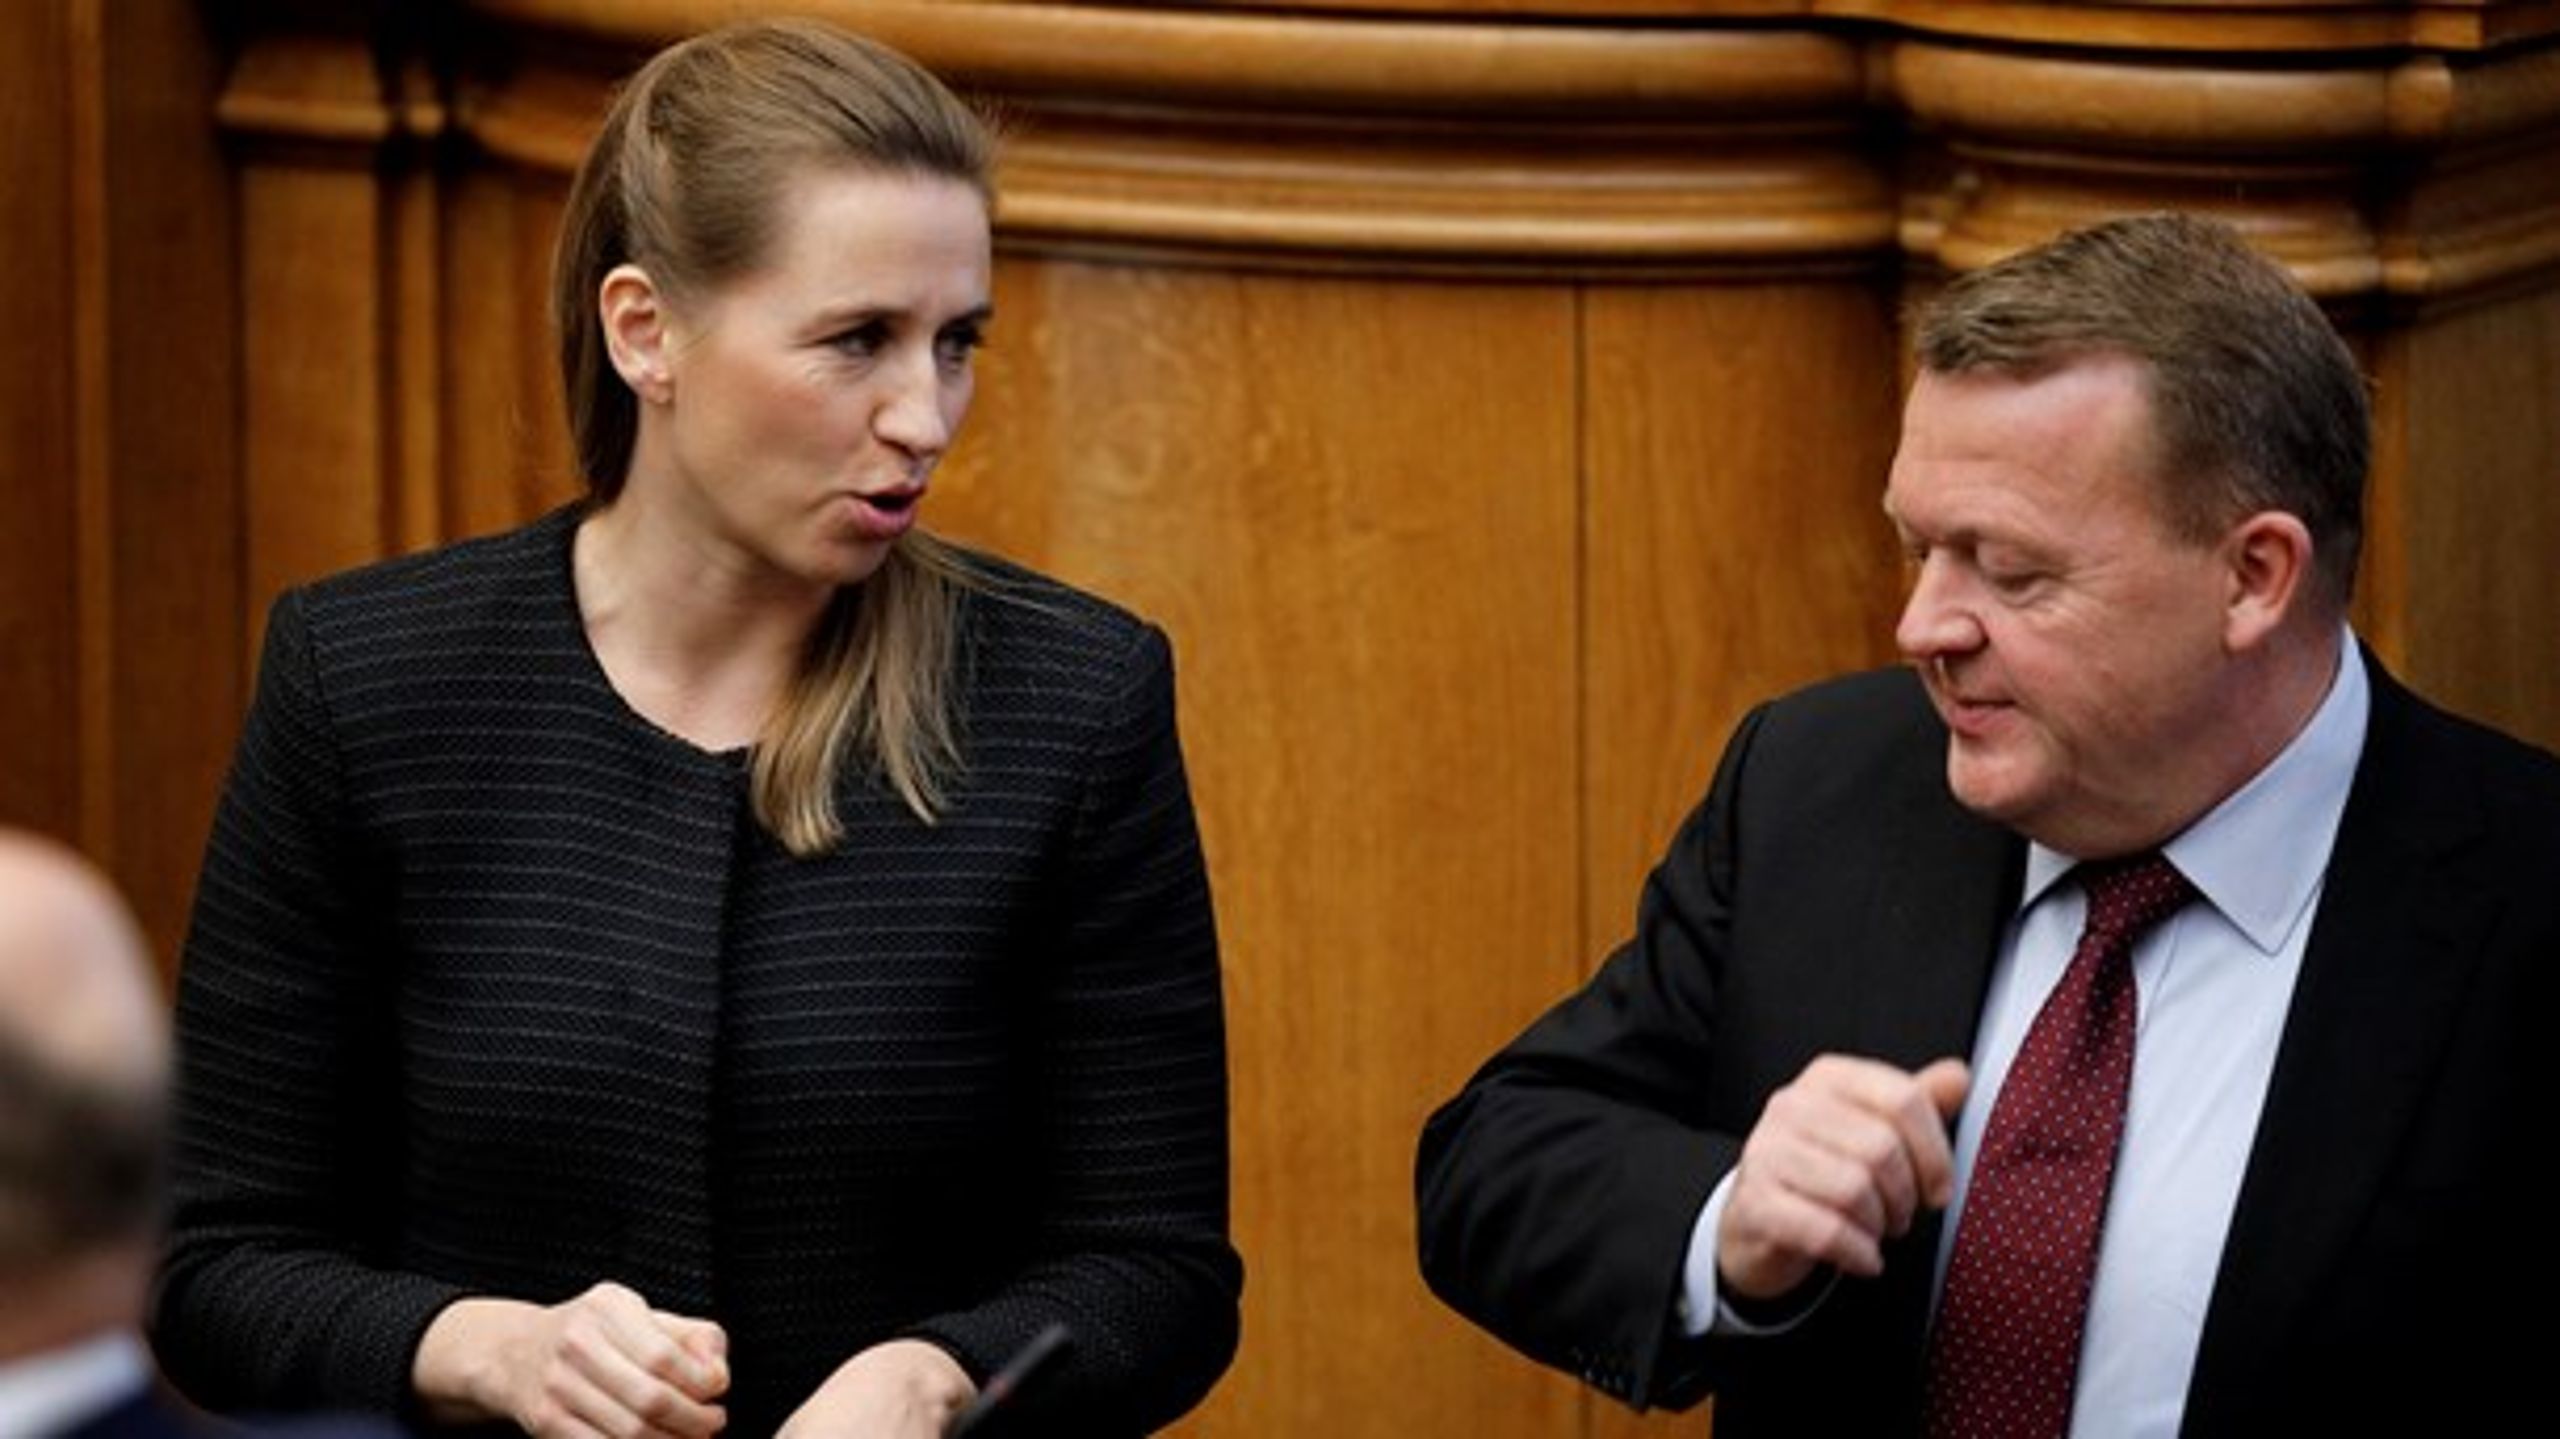 Lars Løkke Rasmussen og Mette Frederiksen ser i følge de nyeste målinger ud til at være skulder mod skulder i opløbet om vælgernes gunst.